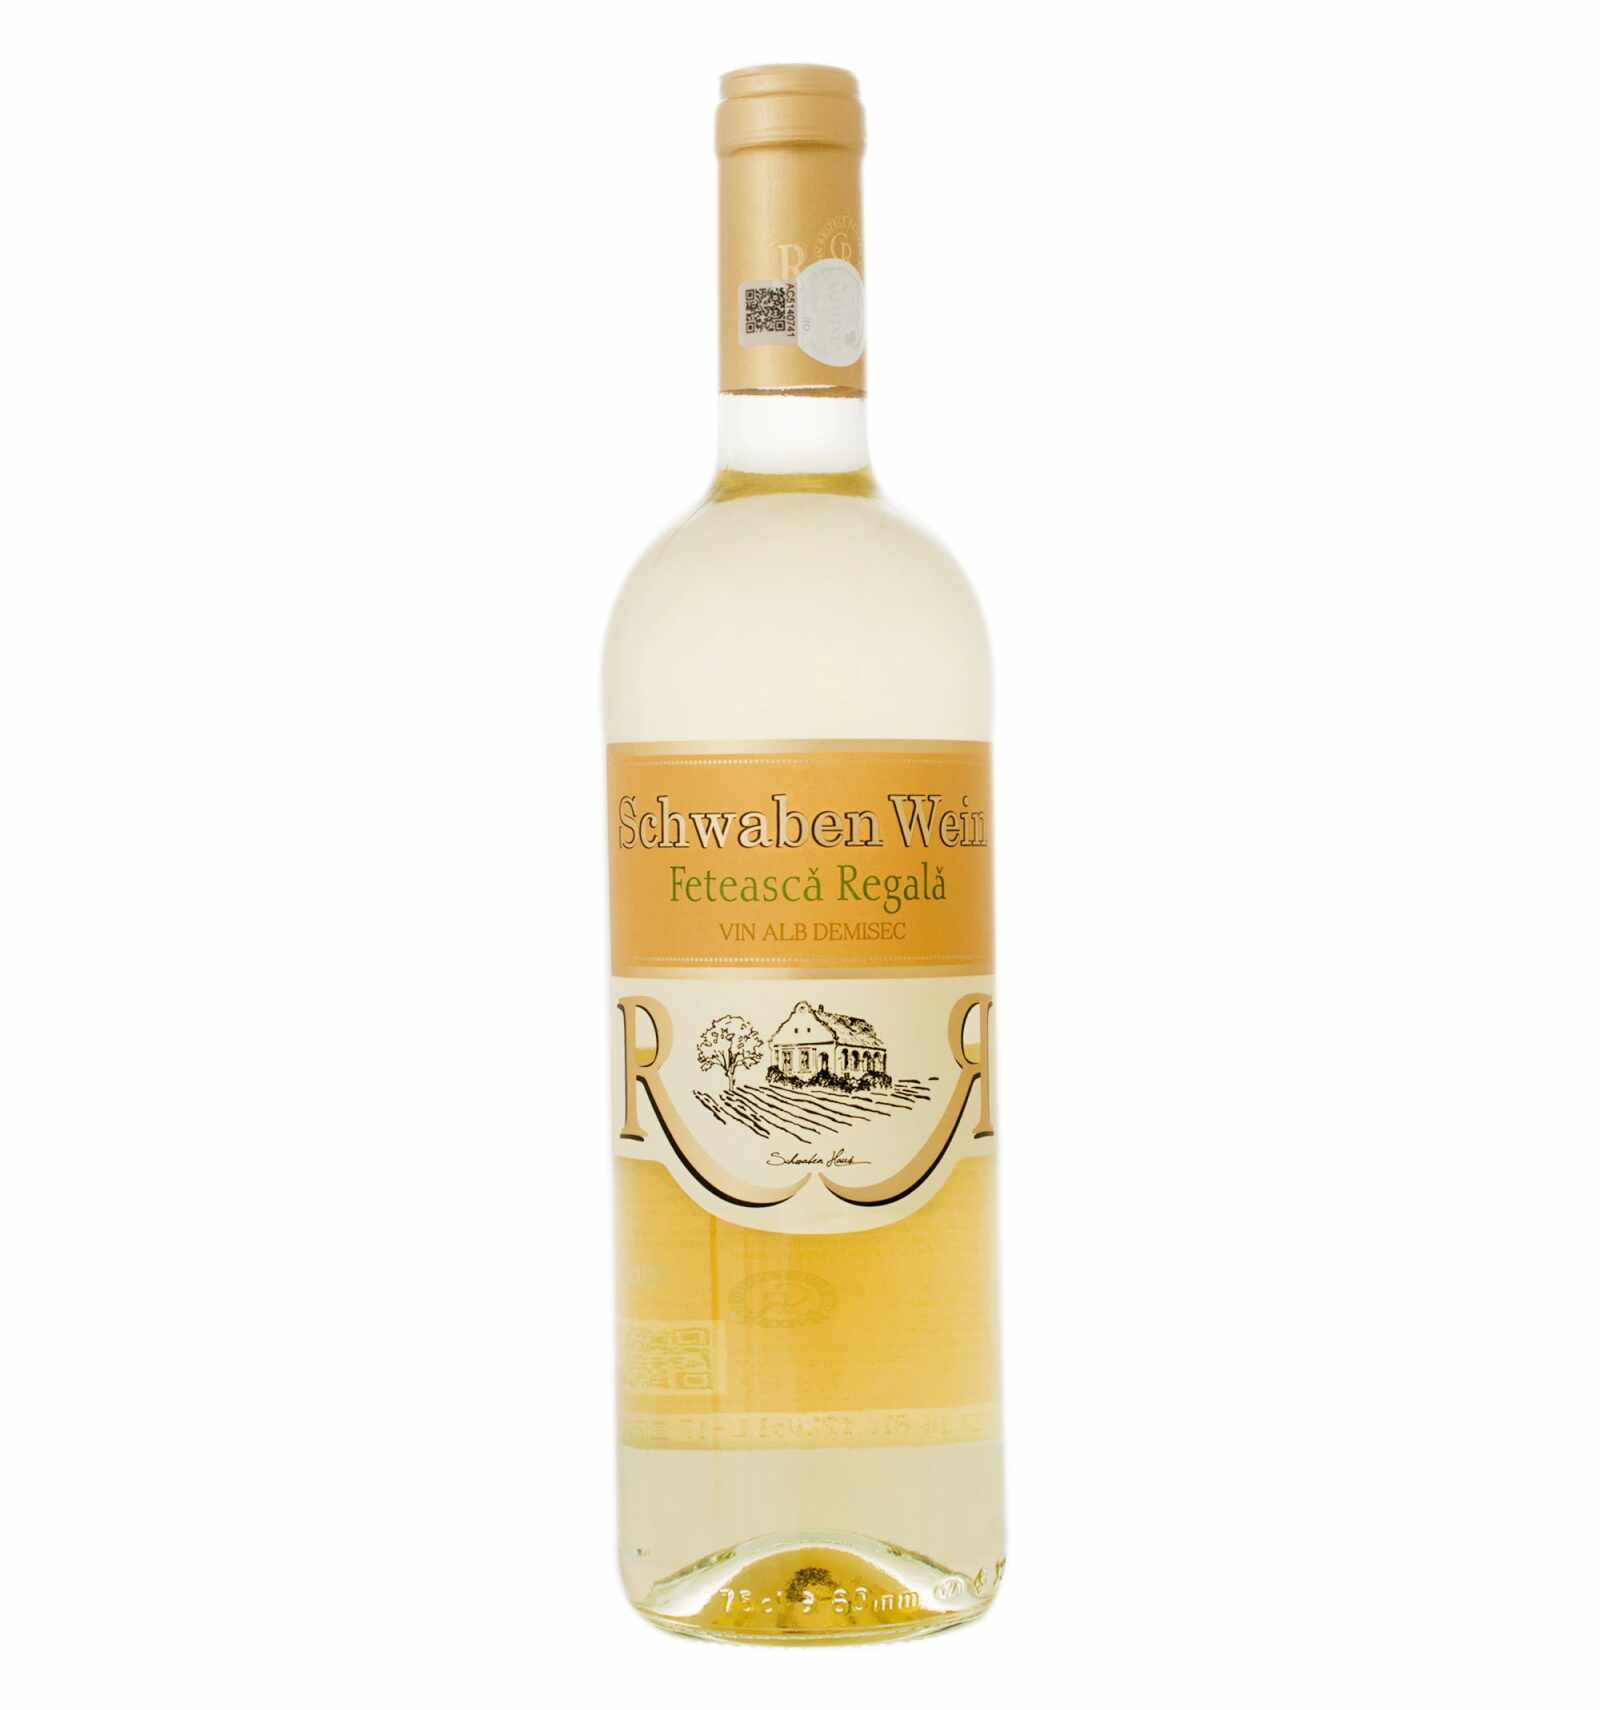 Vin alb demisec, Feteasca Regala, Schwaben Wein Recas, 0.75L, 12% alc., Romania